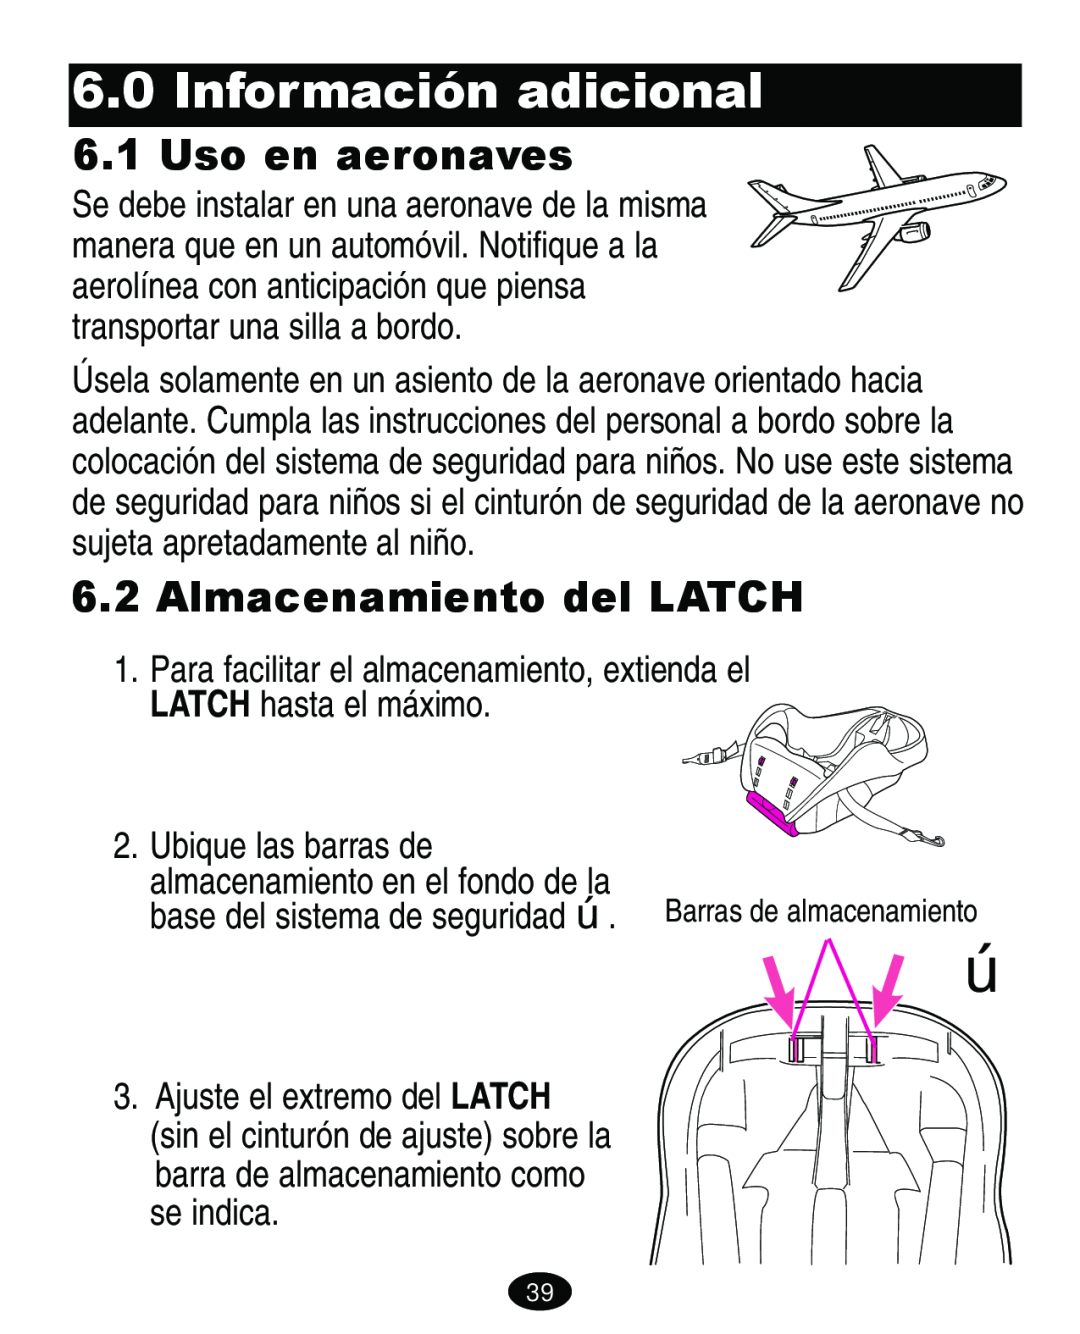 Graco 4460402 manual Información adicional, Uso en aeronaves, Almacenamiento del LATCH 